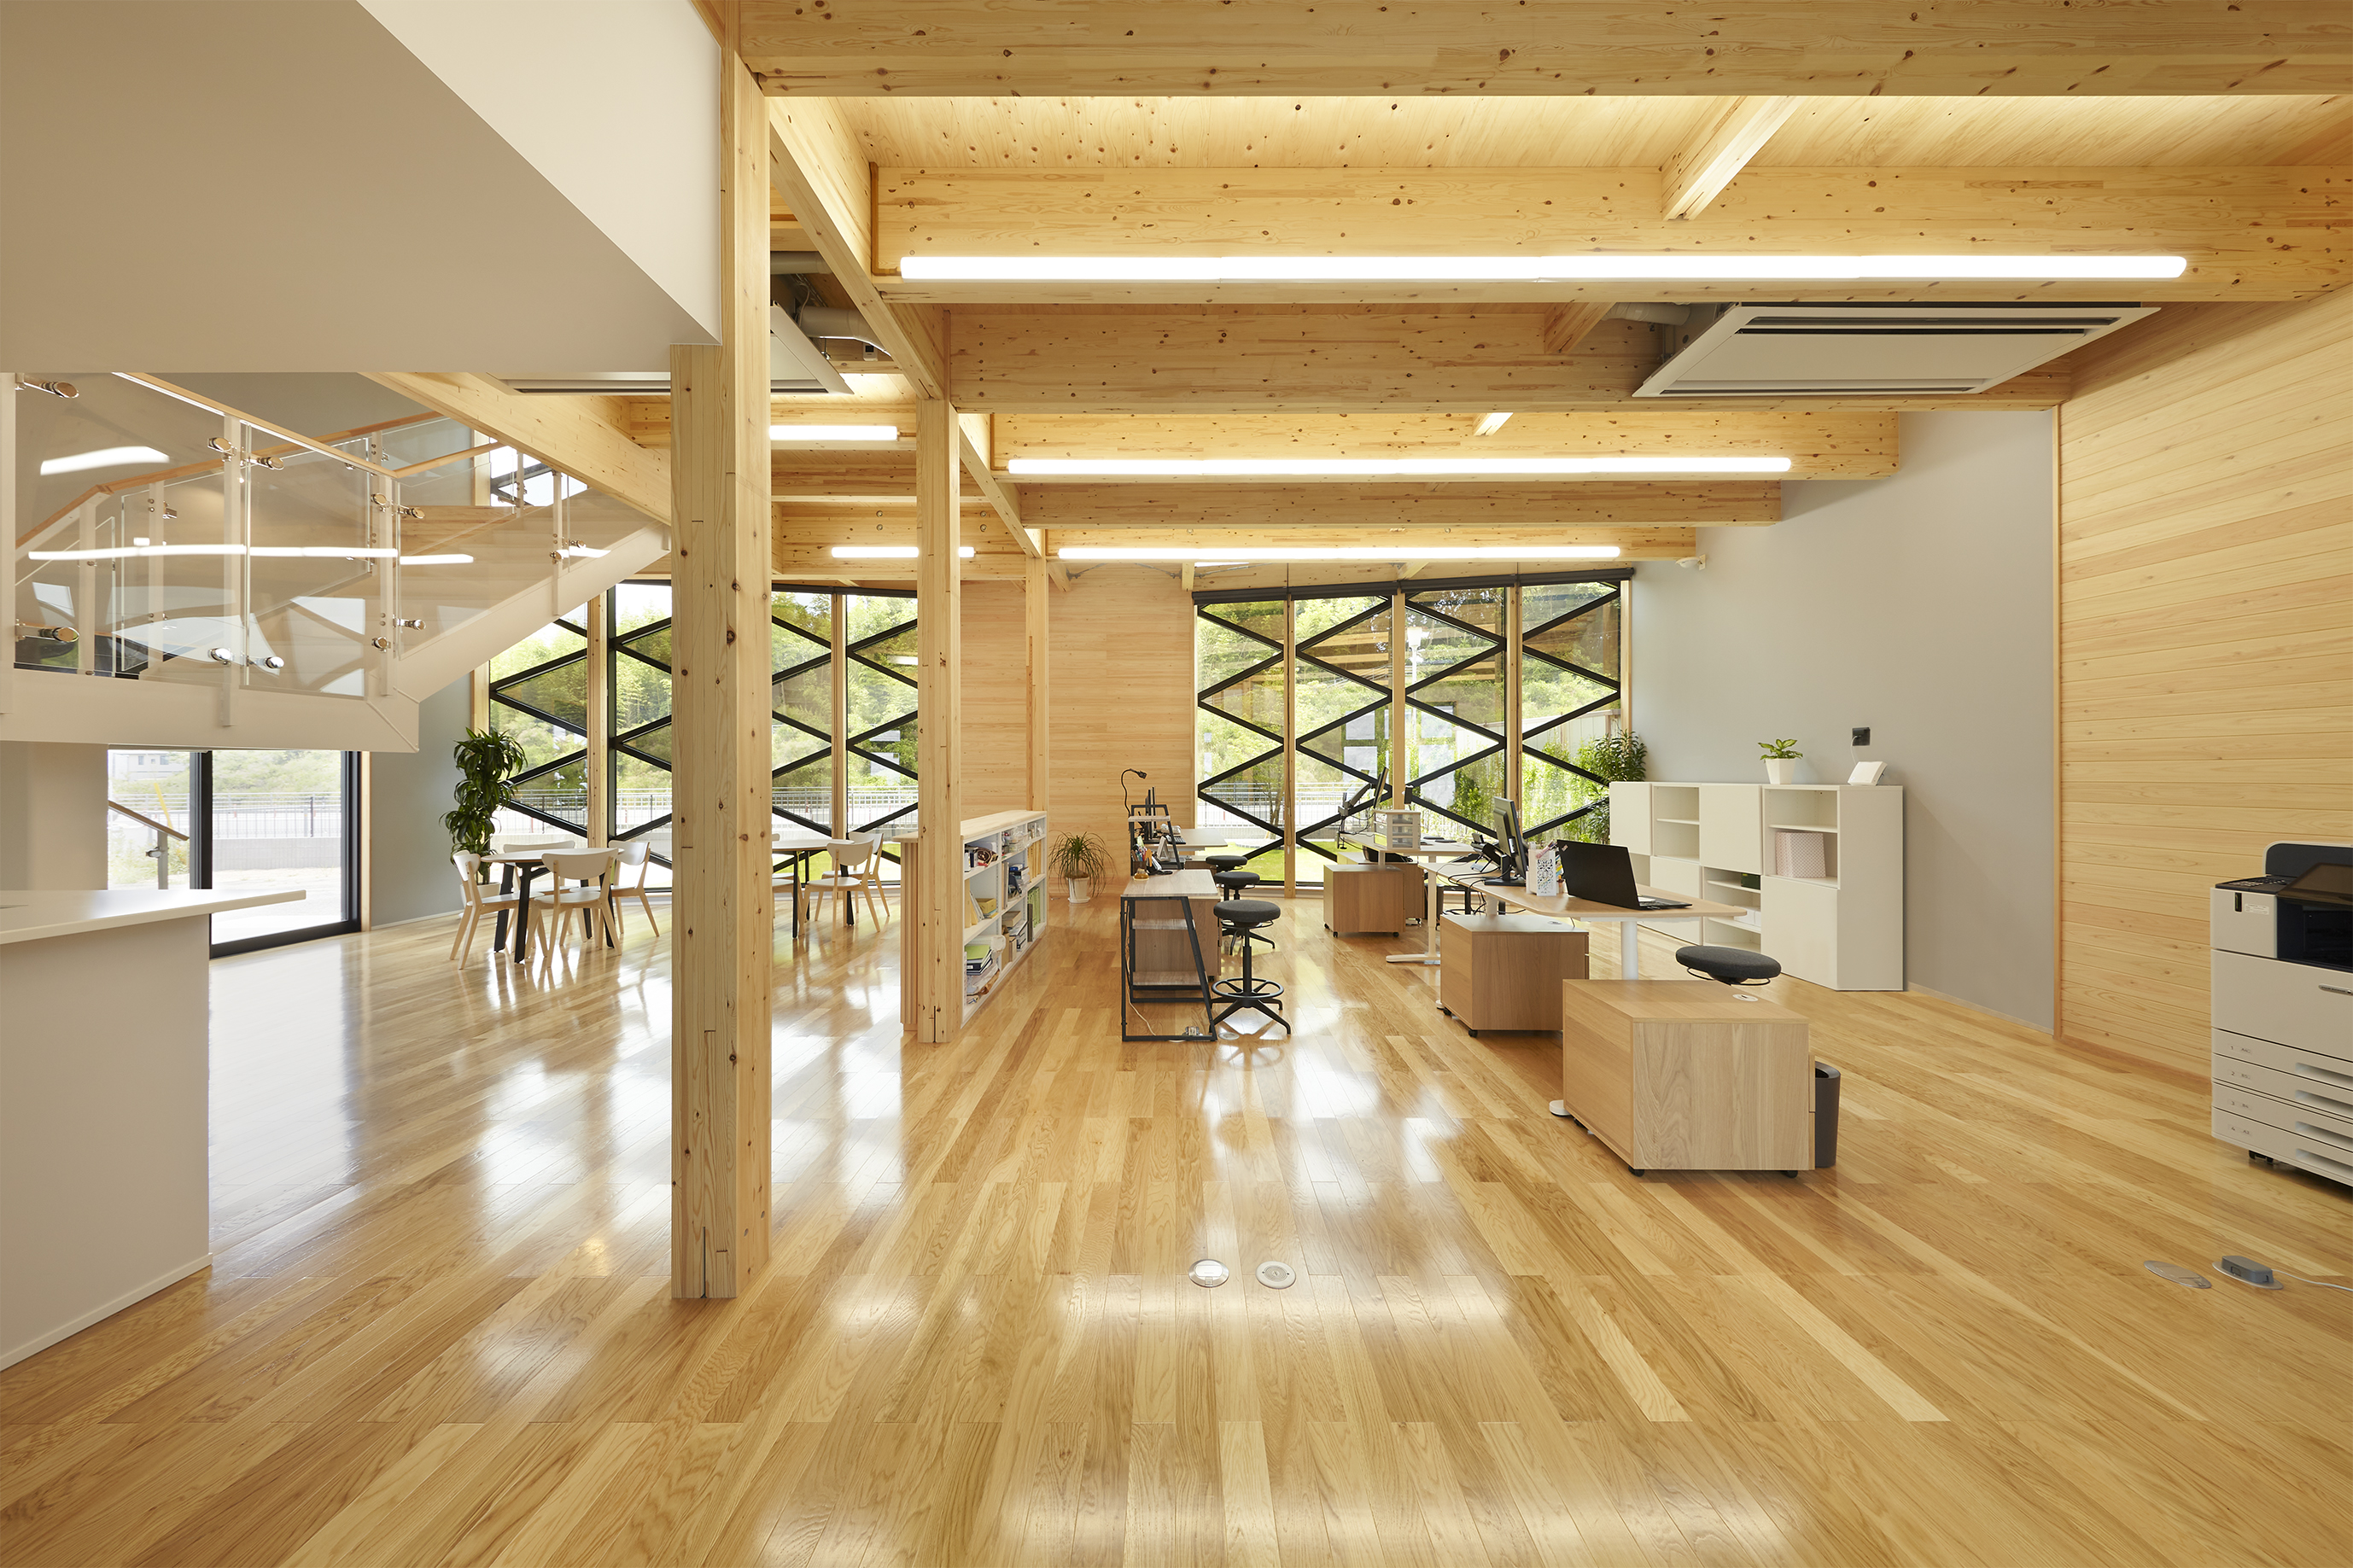 この木造の事務所には、地域に貢献する会社としてサスティナブルな事業展開をするためにさまざまな設計のアイデアが盛り込まれています。  外観の特徴的なガラスのファサードを通じて、開放的な木質空間の雰囲気が伝わる建築デザインとなっています。  ＜画像＞    ＜「くみあい運輸新社屋」の概要＞ ・用途：事務所 ・構造：木造（SE構法） ・階数：2階建て ・延床面積：186.90㎡  関連記事：SE構法の事務所の事例紹介「くみあい運輸新社屋」